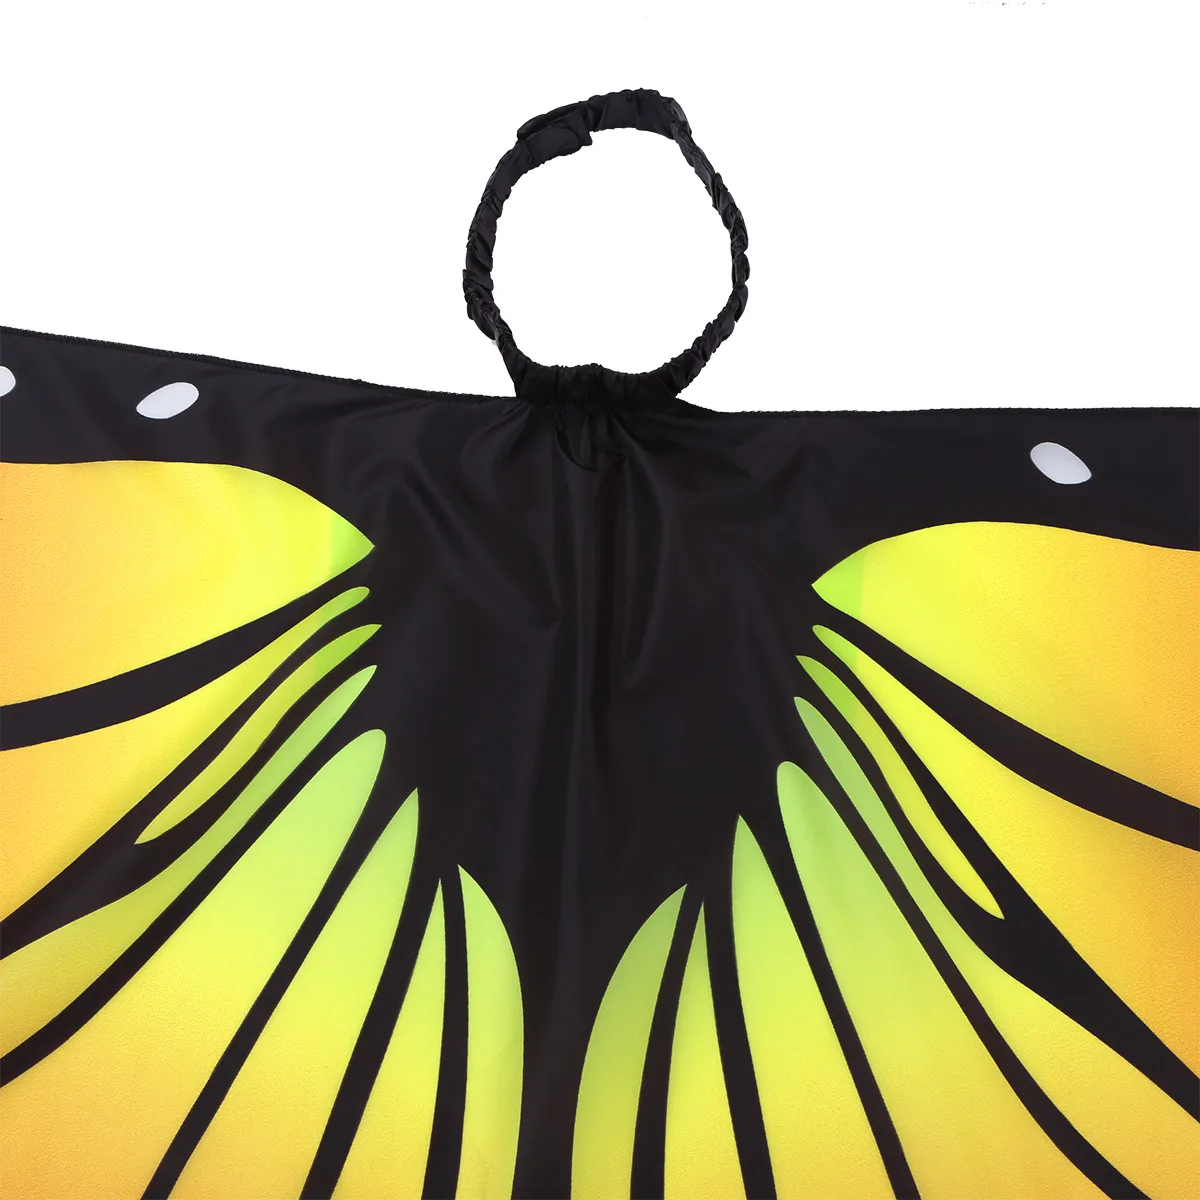 Крылья для танца живота для девочек, крылья бабочки, накидка, костюм, аксессуары для танца живота, костюмы Феи, наряды, крылья ангела, крылья для танца